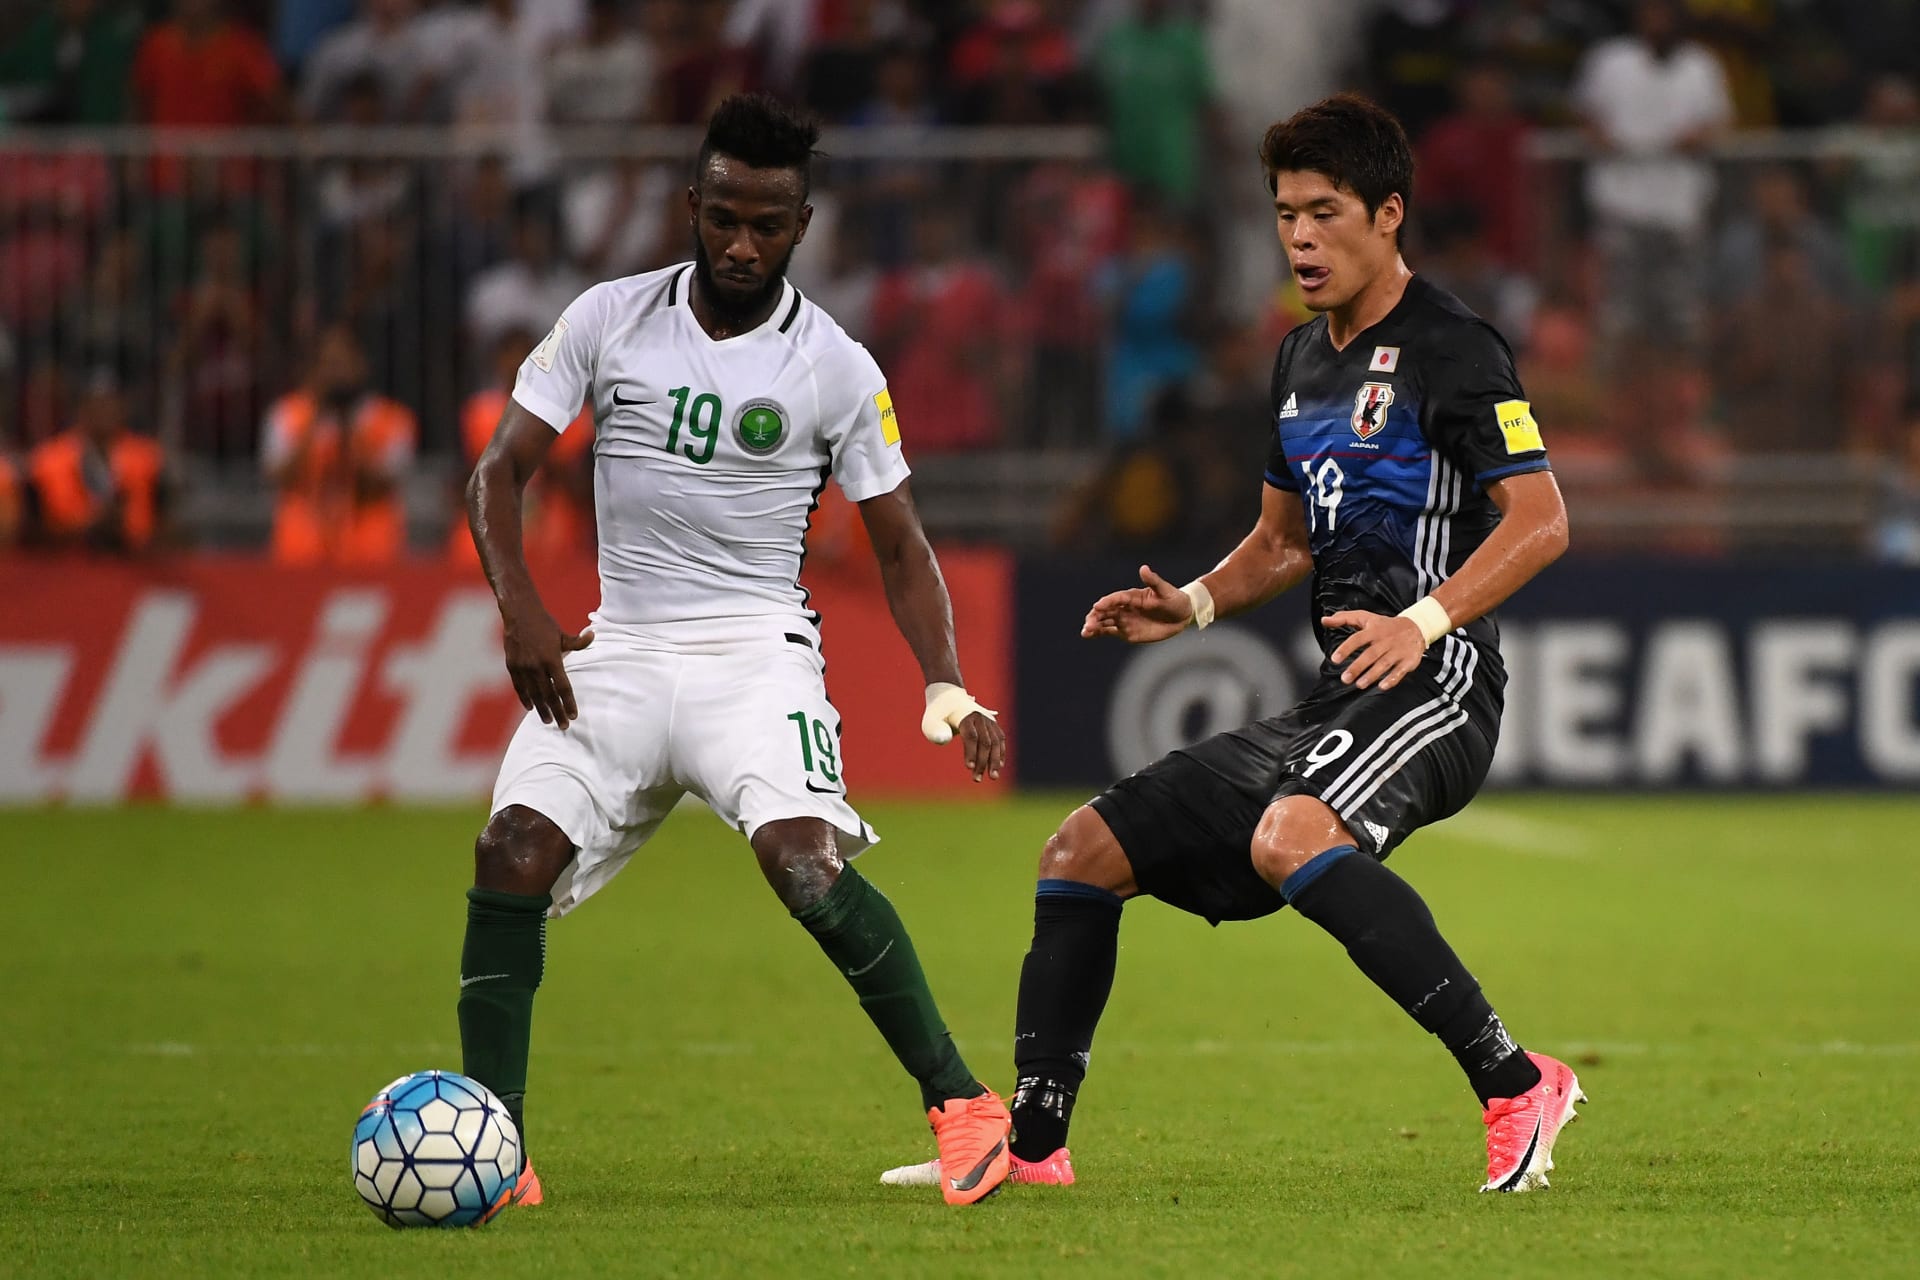 إيقاف صاحب هدف تأهل السعودية إلى كأس العالم بسبب "سلوك غير رياضي"